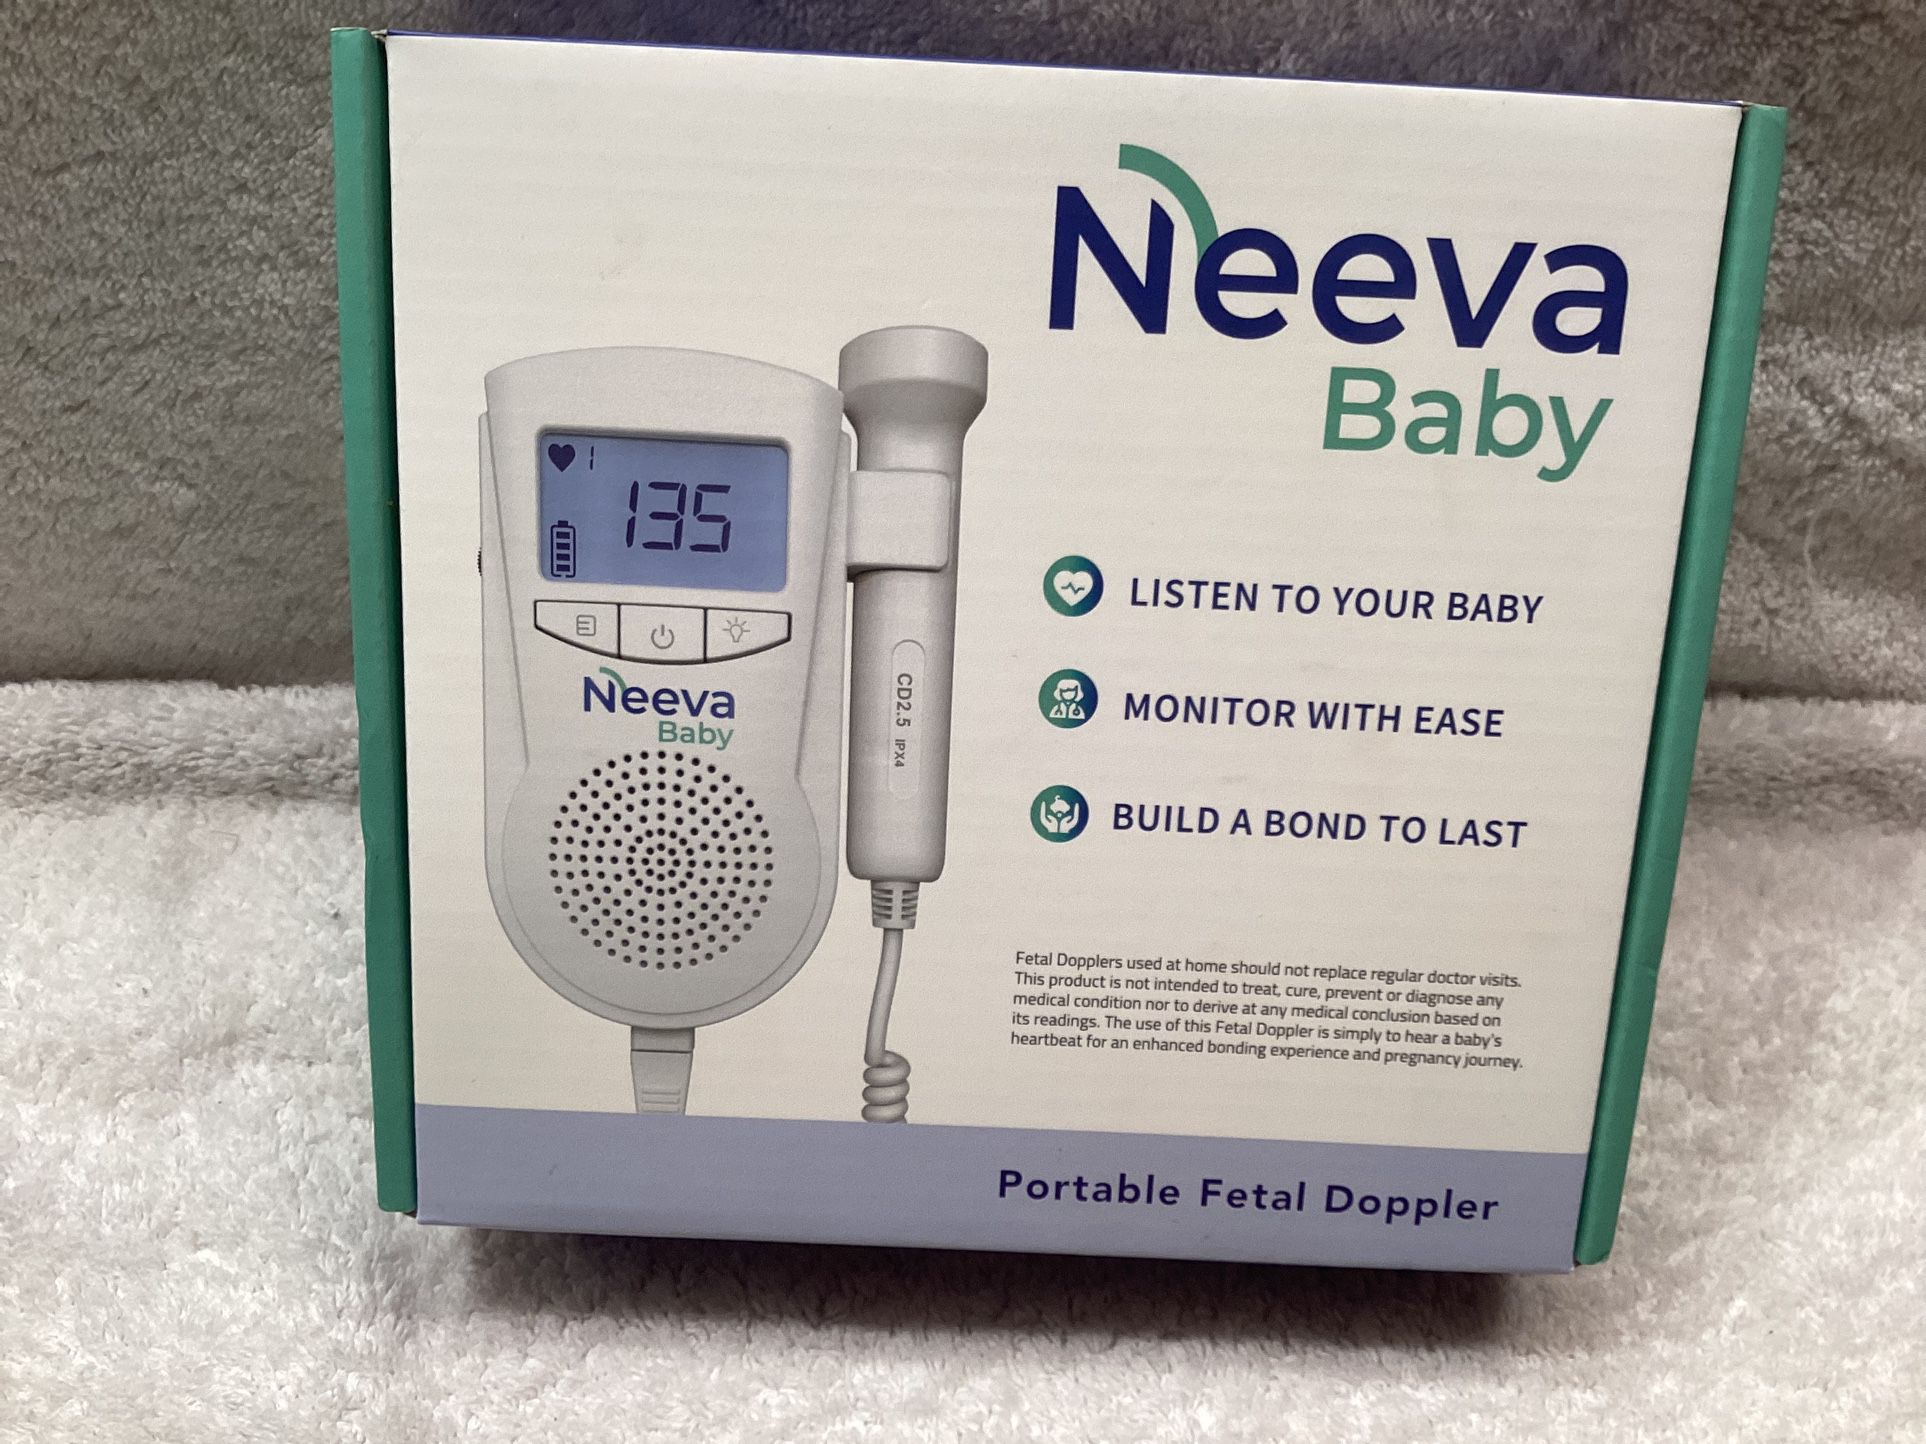 Neeva baby portable Fetal Doppler